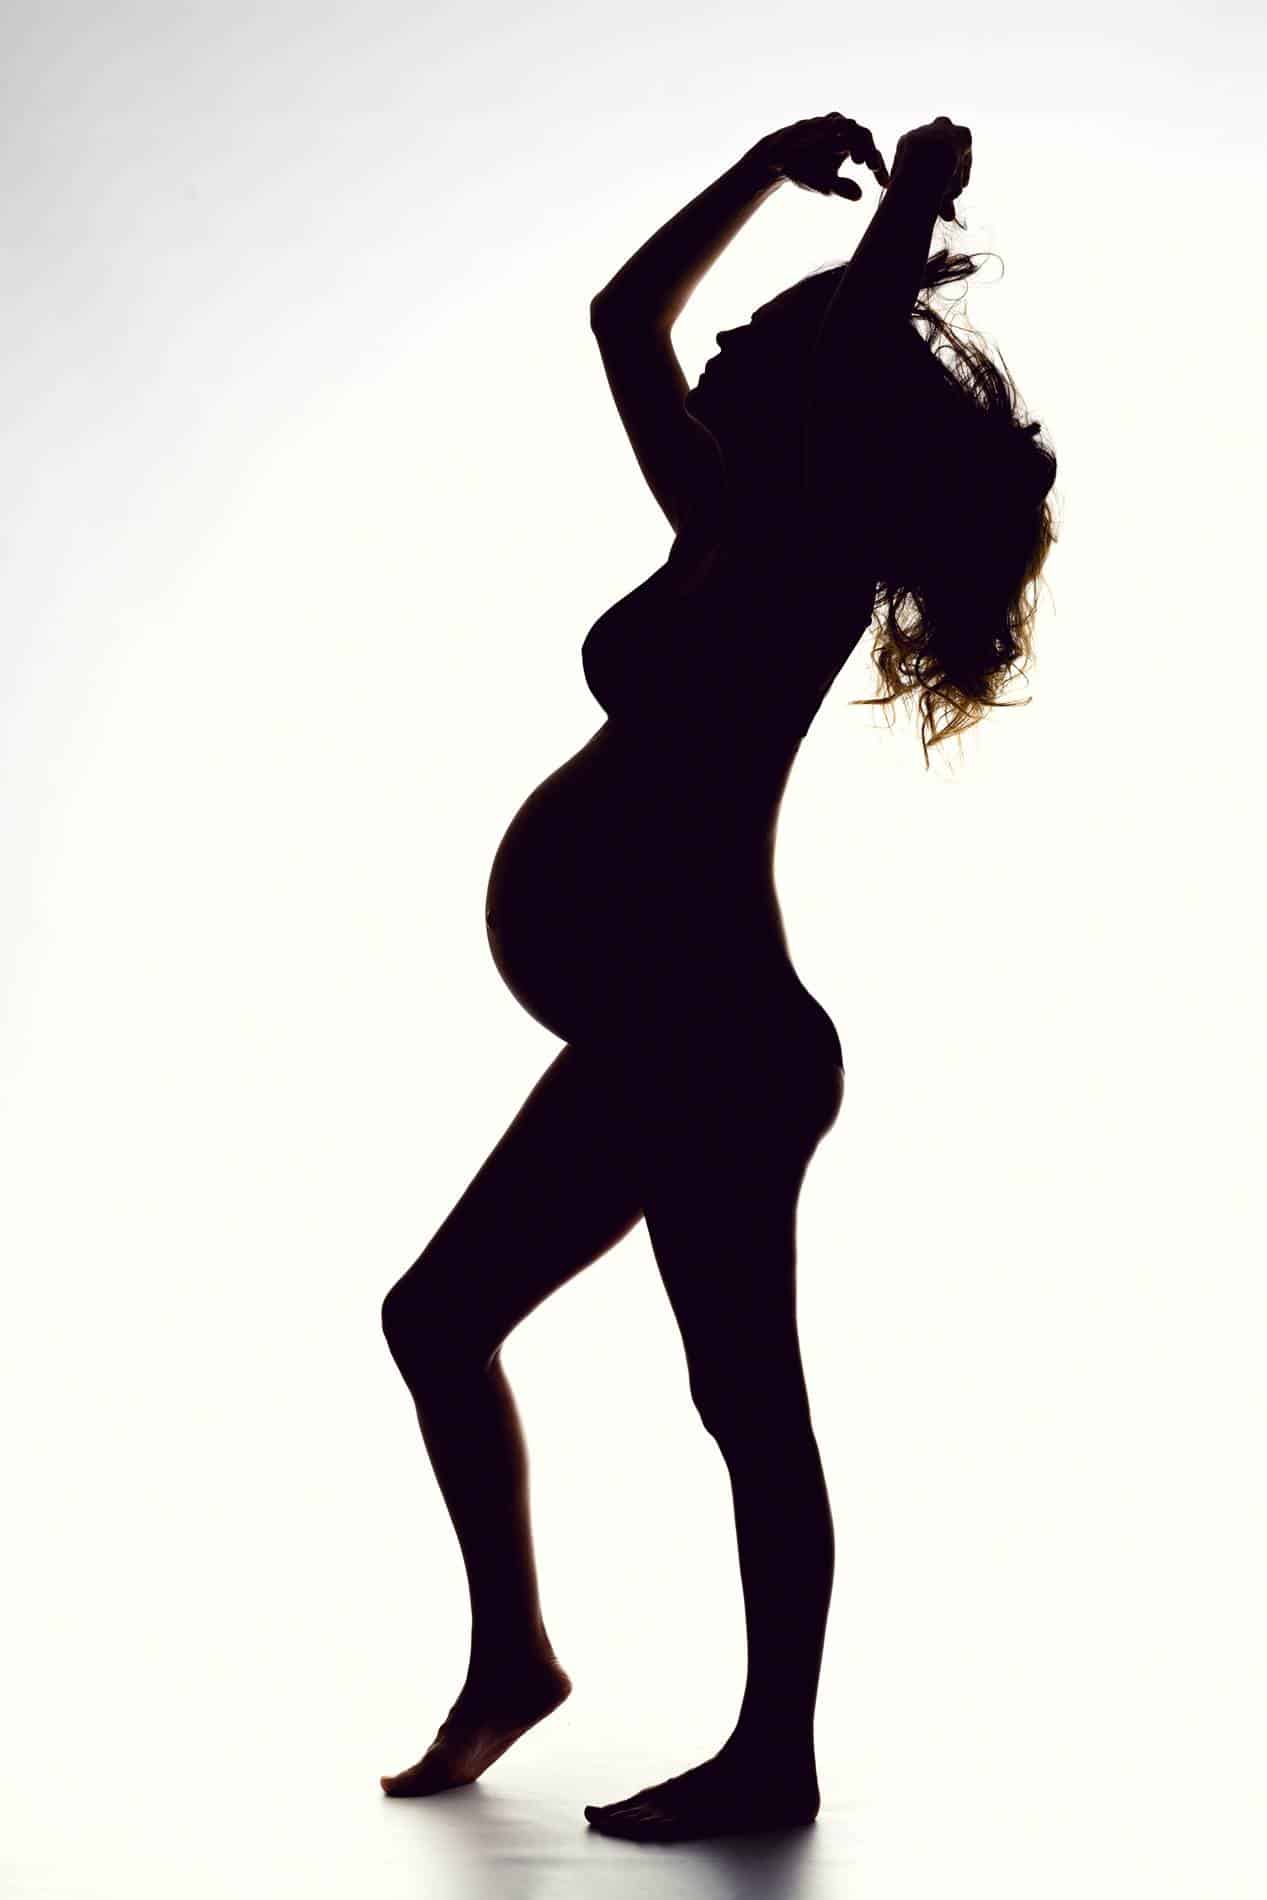 Sesión de fotos para embarazadas - Fotografía premamá - sesión de fotos embarazada desnuda